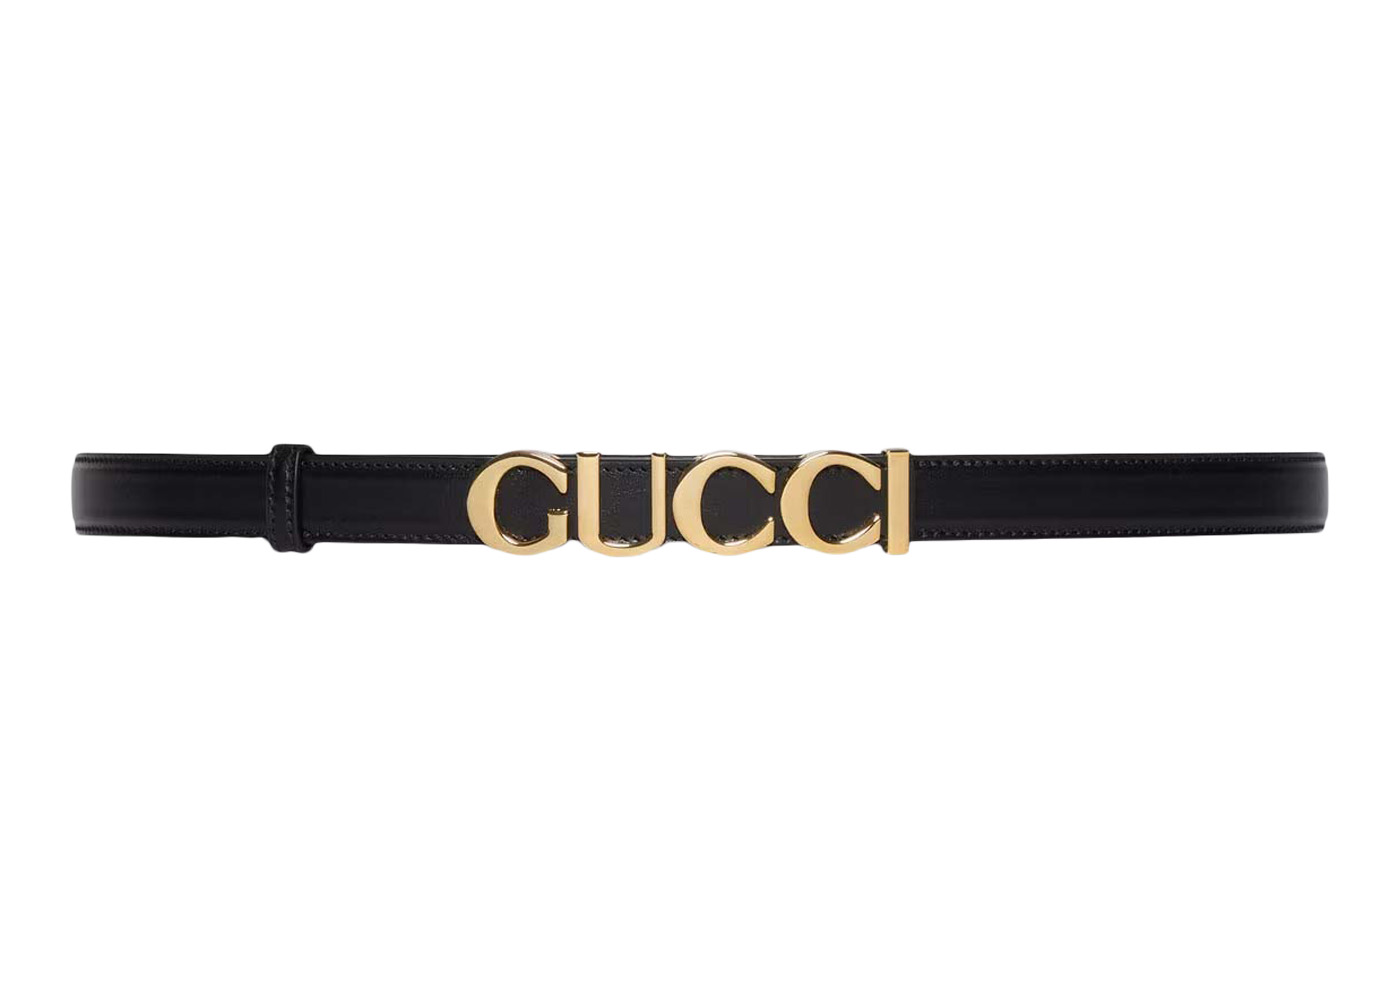 Gucci Interlocking G Buckle Thin Belt Black